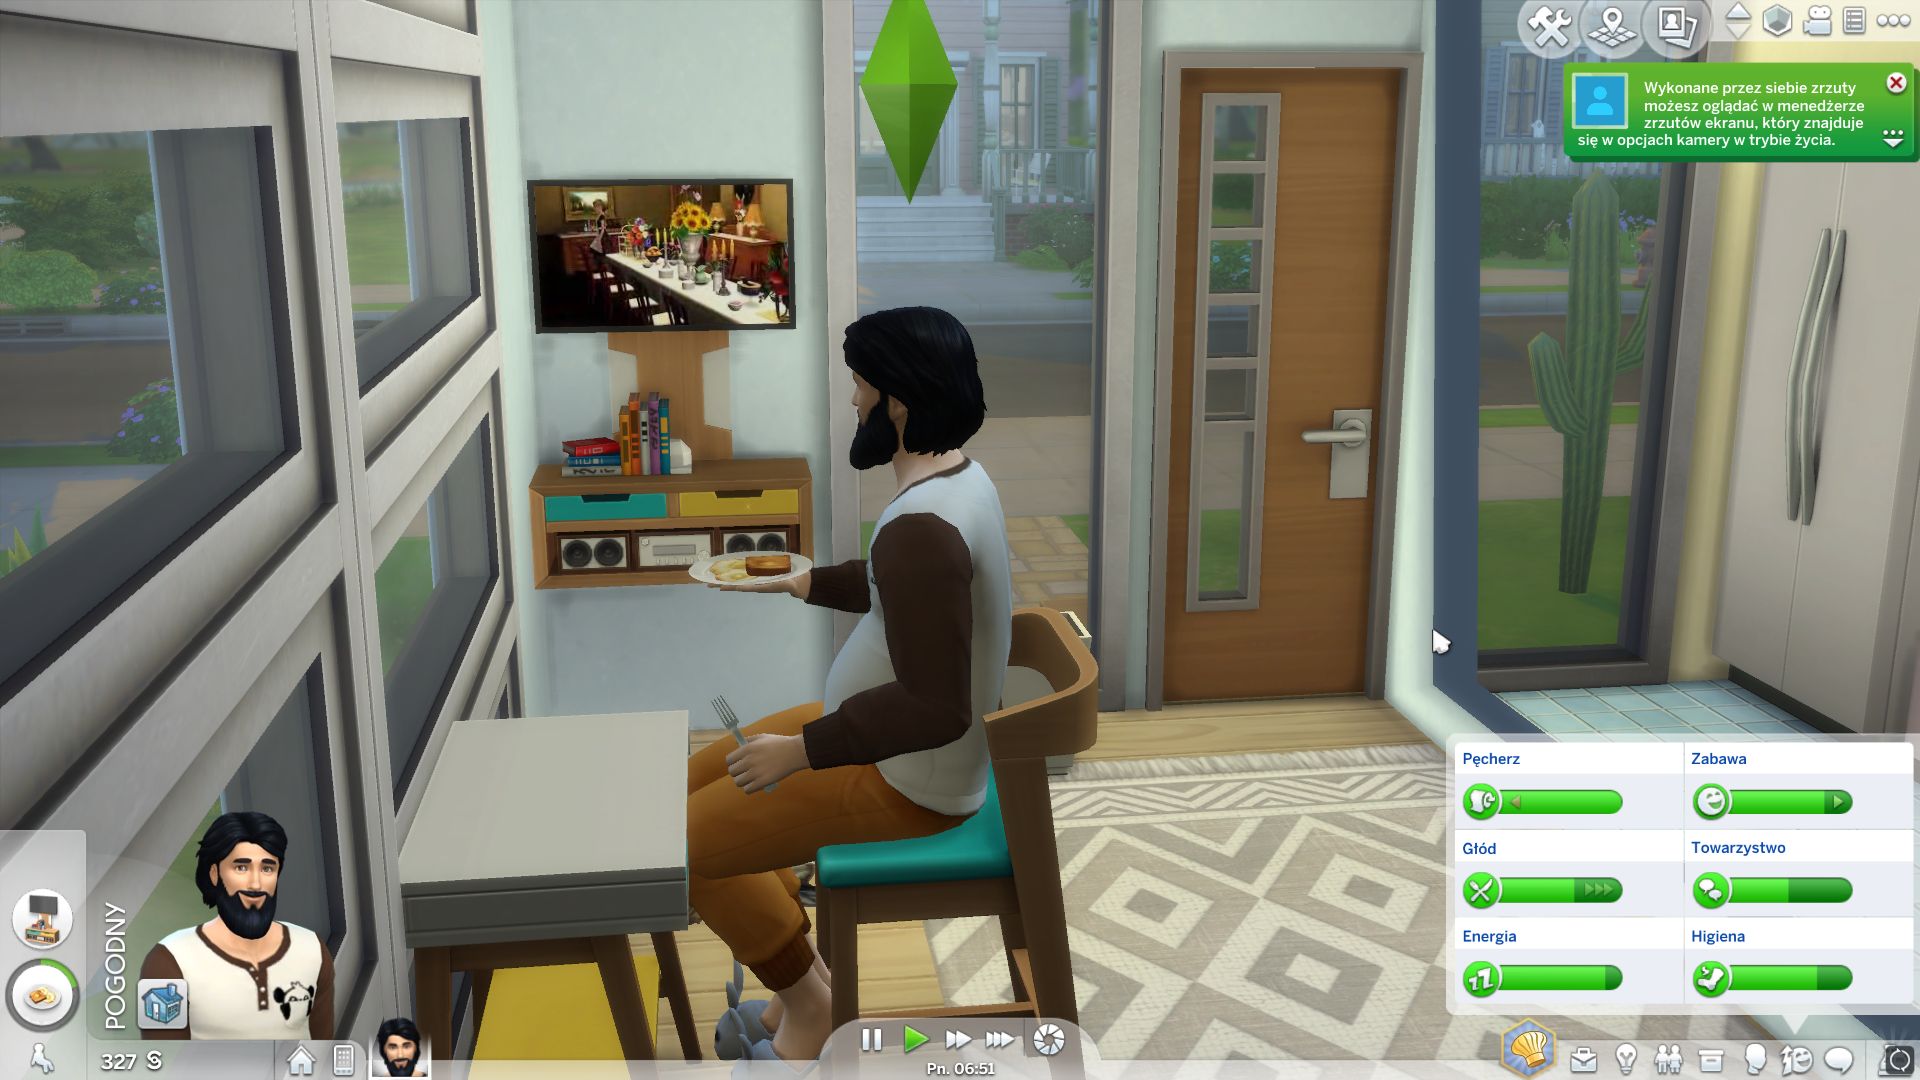 The Sims 4 Kompaktowe wnętrza recenzja dodatku